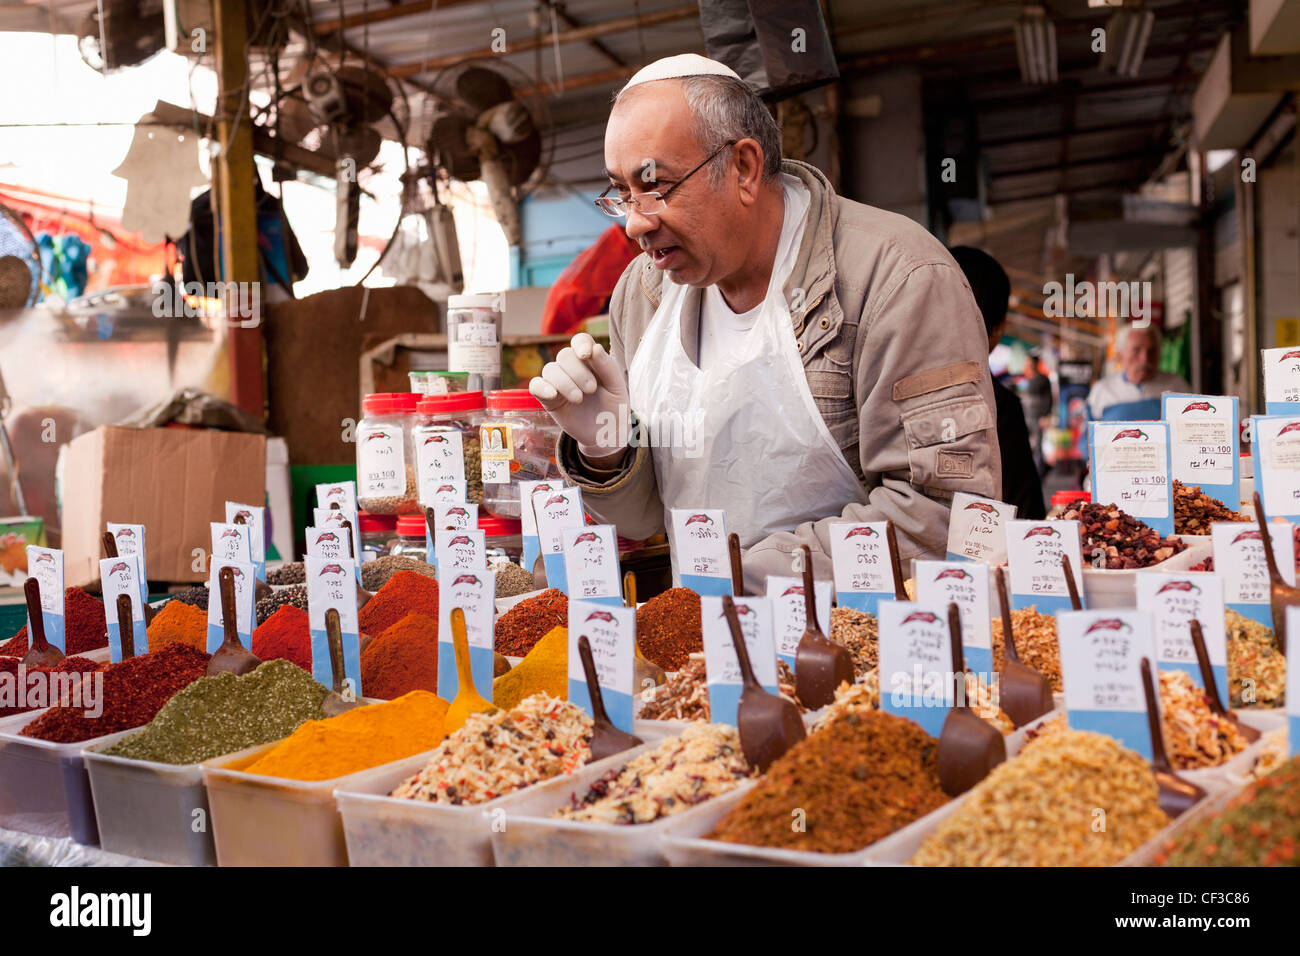 Israel, Tel Aviv, Carmel Market, vendedor de especias con una muestra de hierbas frescas y especias Foto de stock